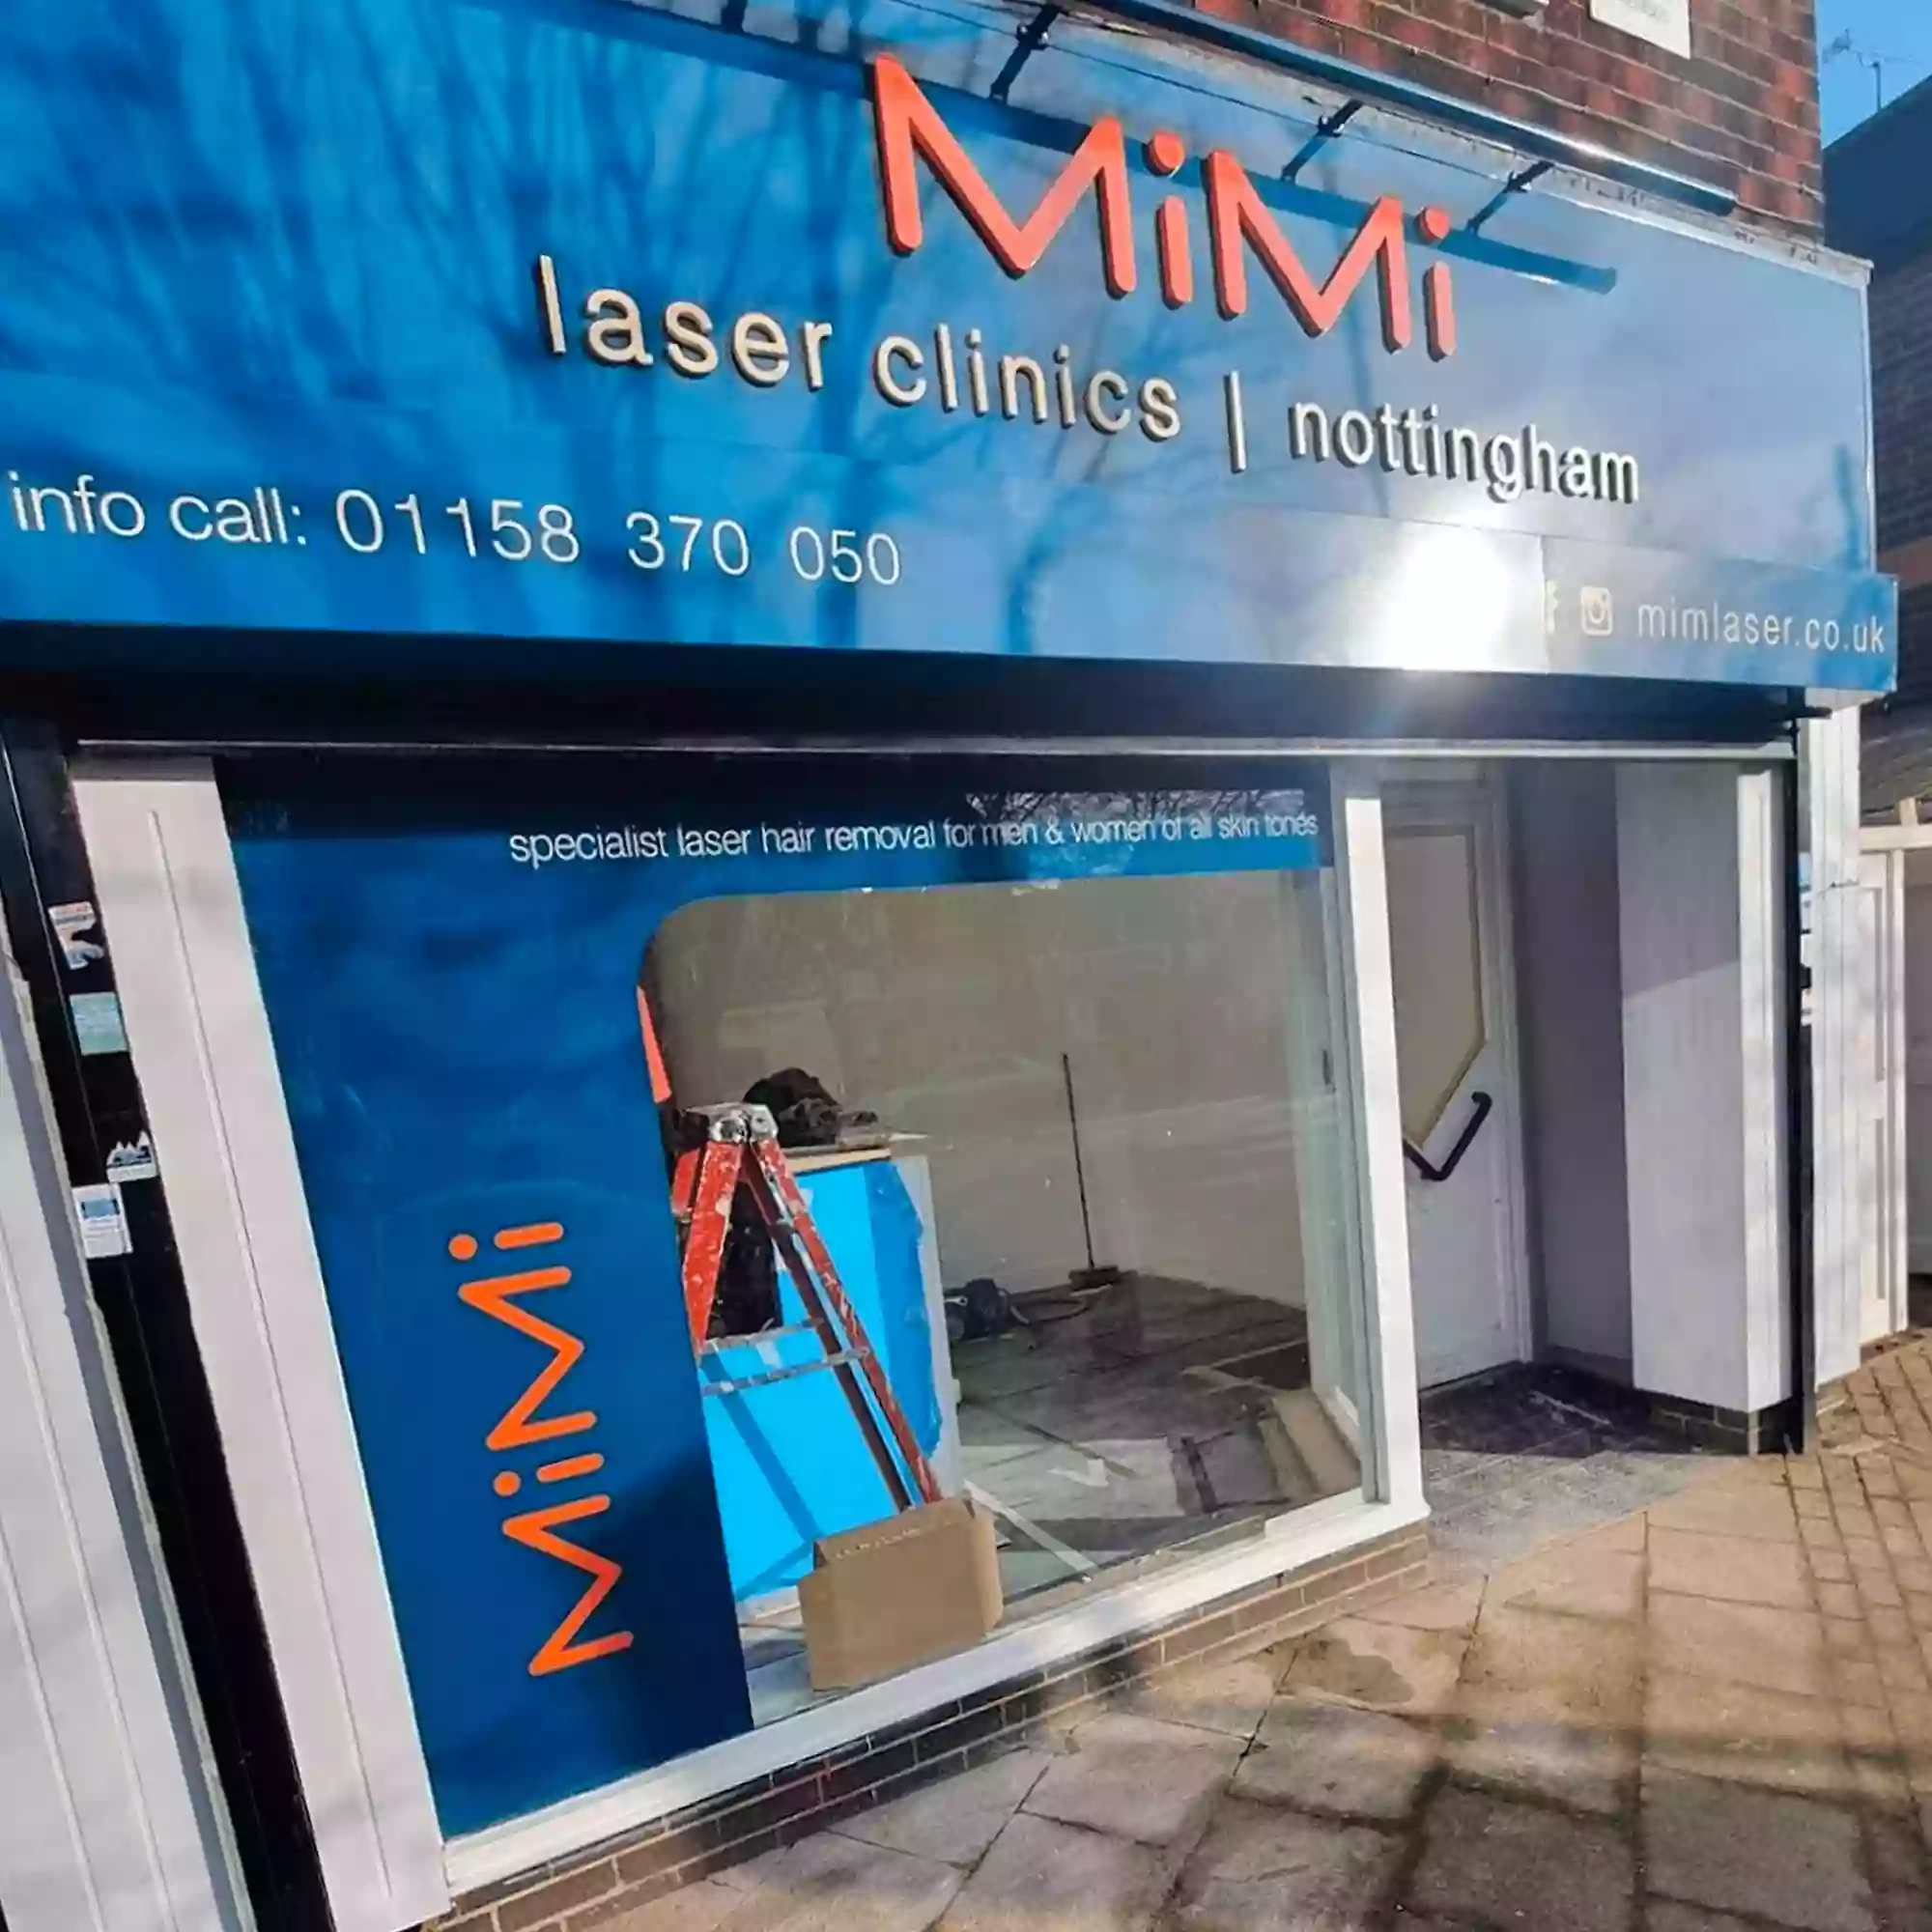 MiMi Laser Clinics